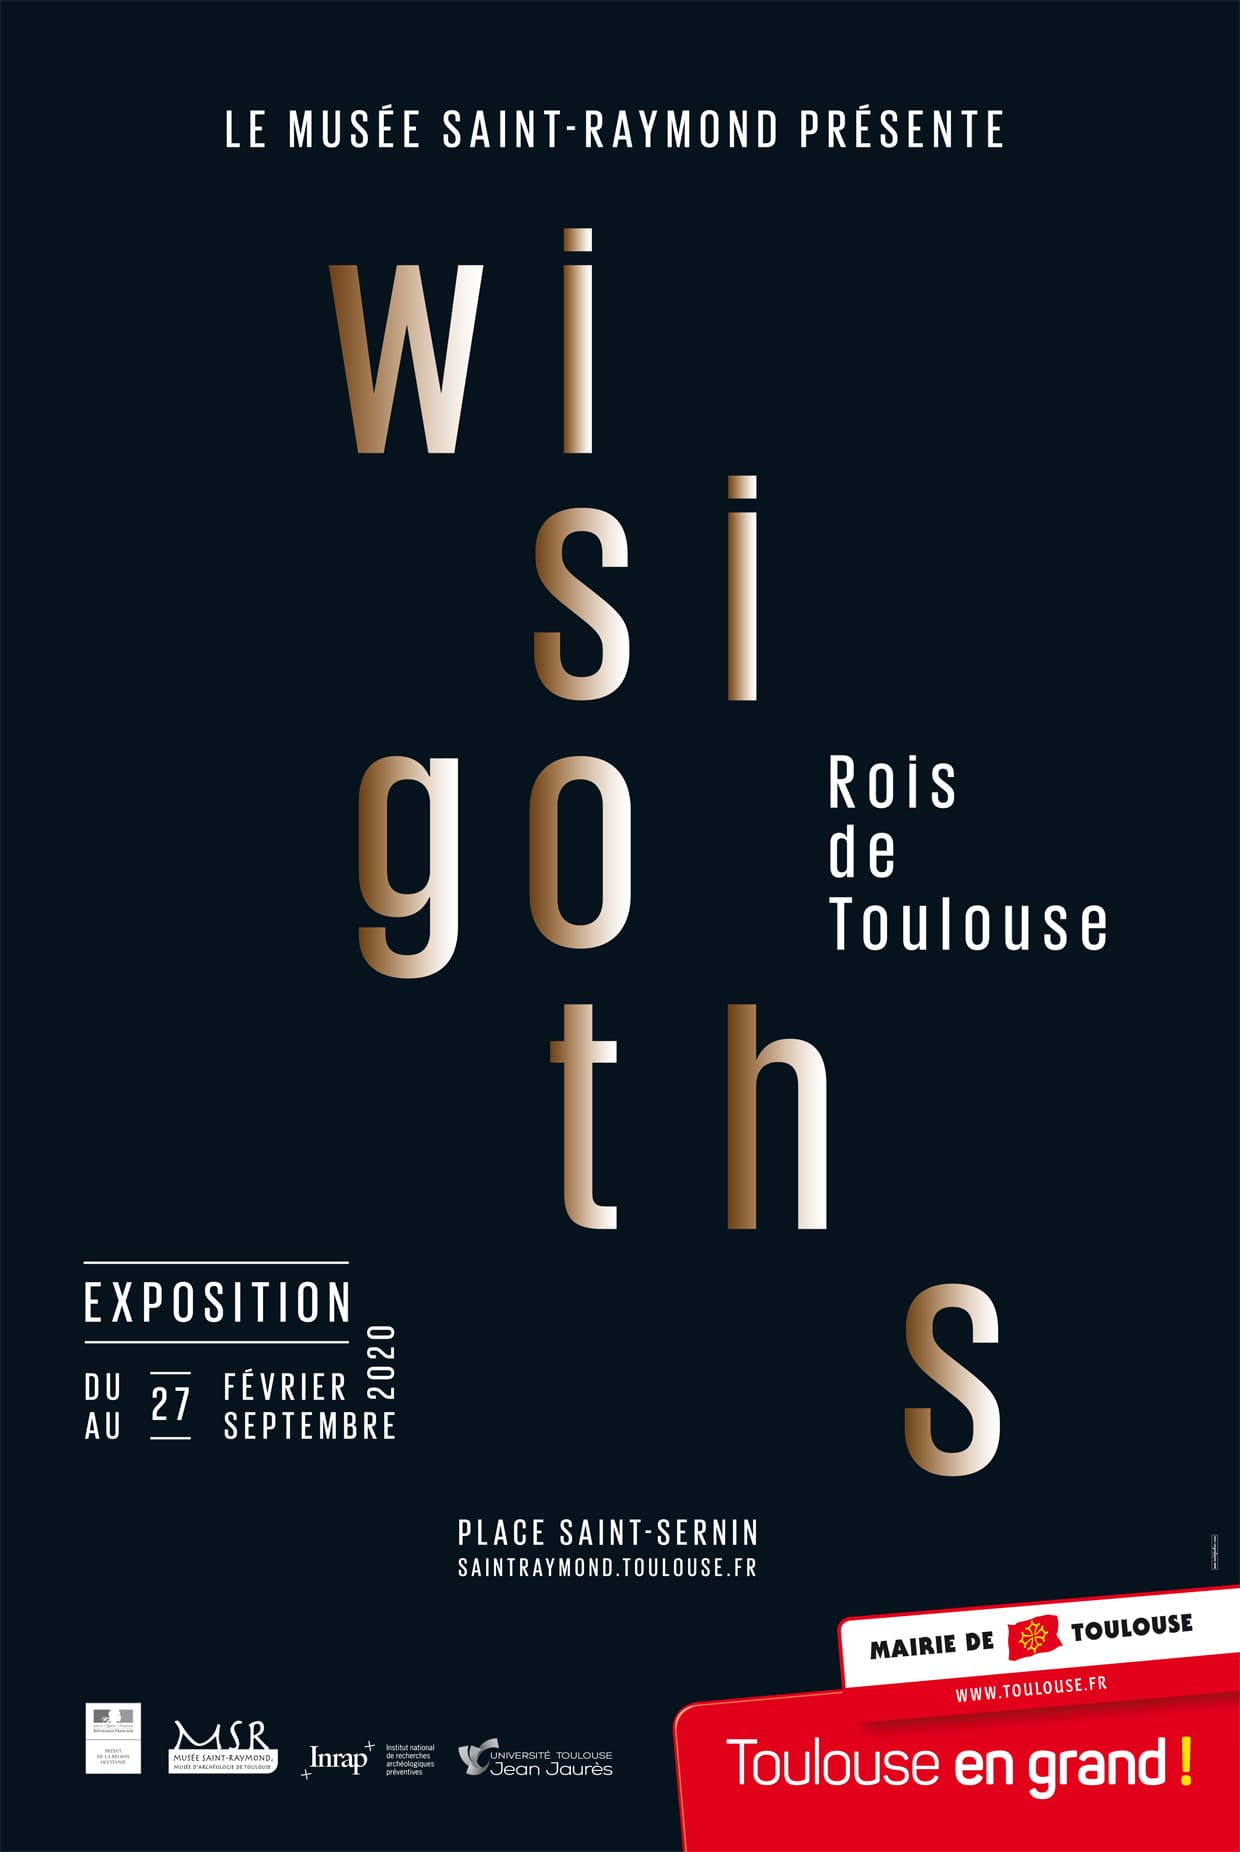 Wisigoths rois de Toulouse exposition au Musée Saint-Raymond